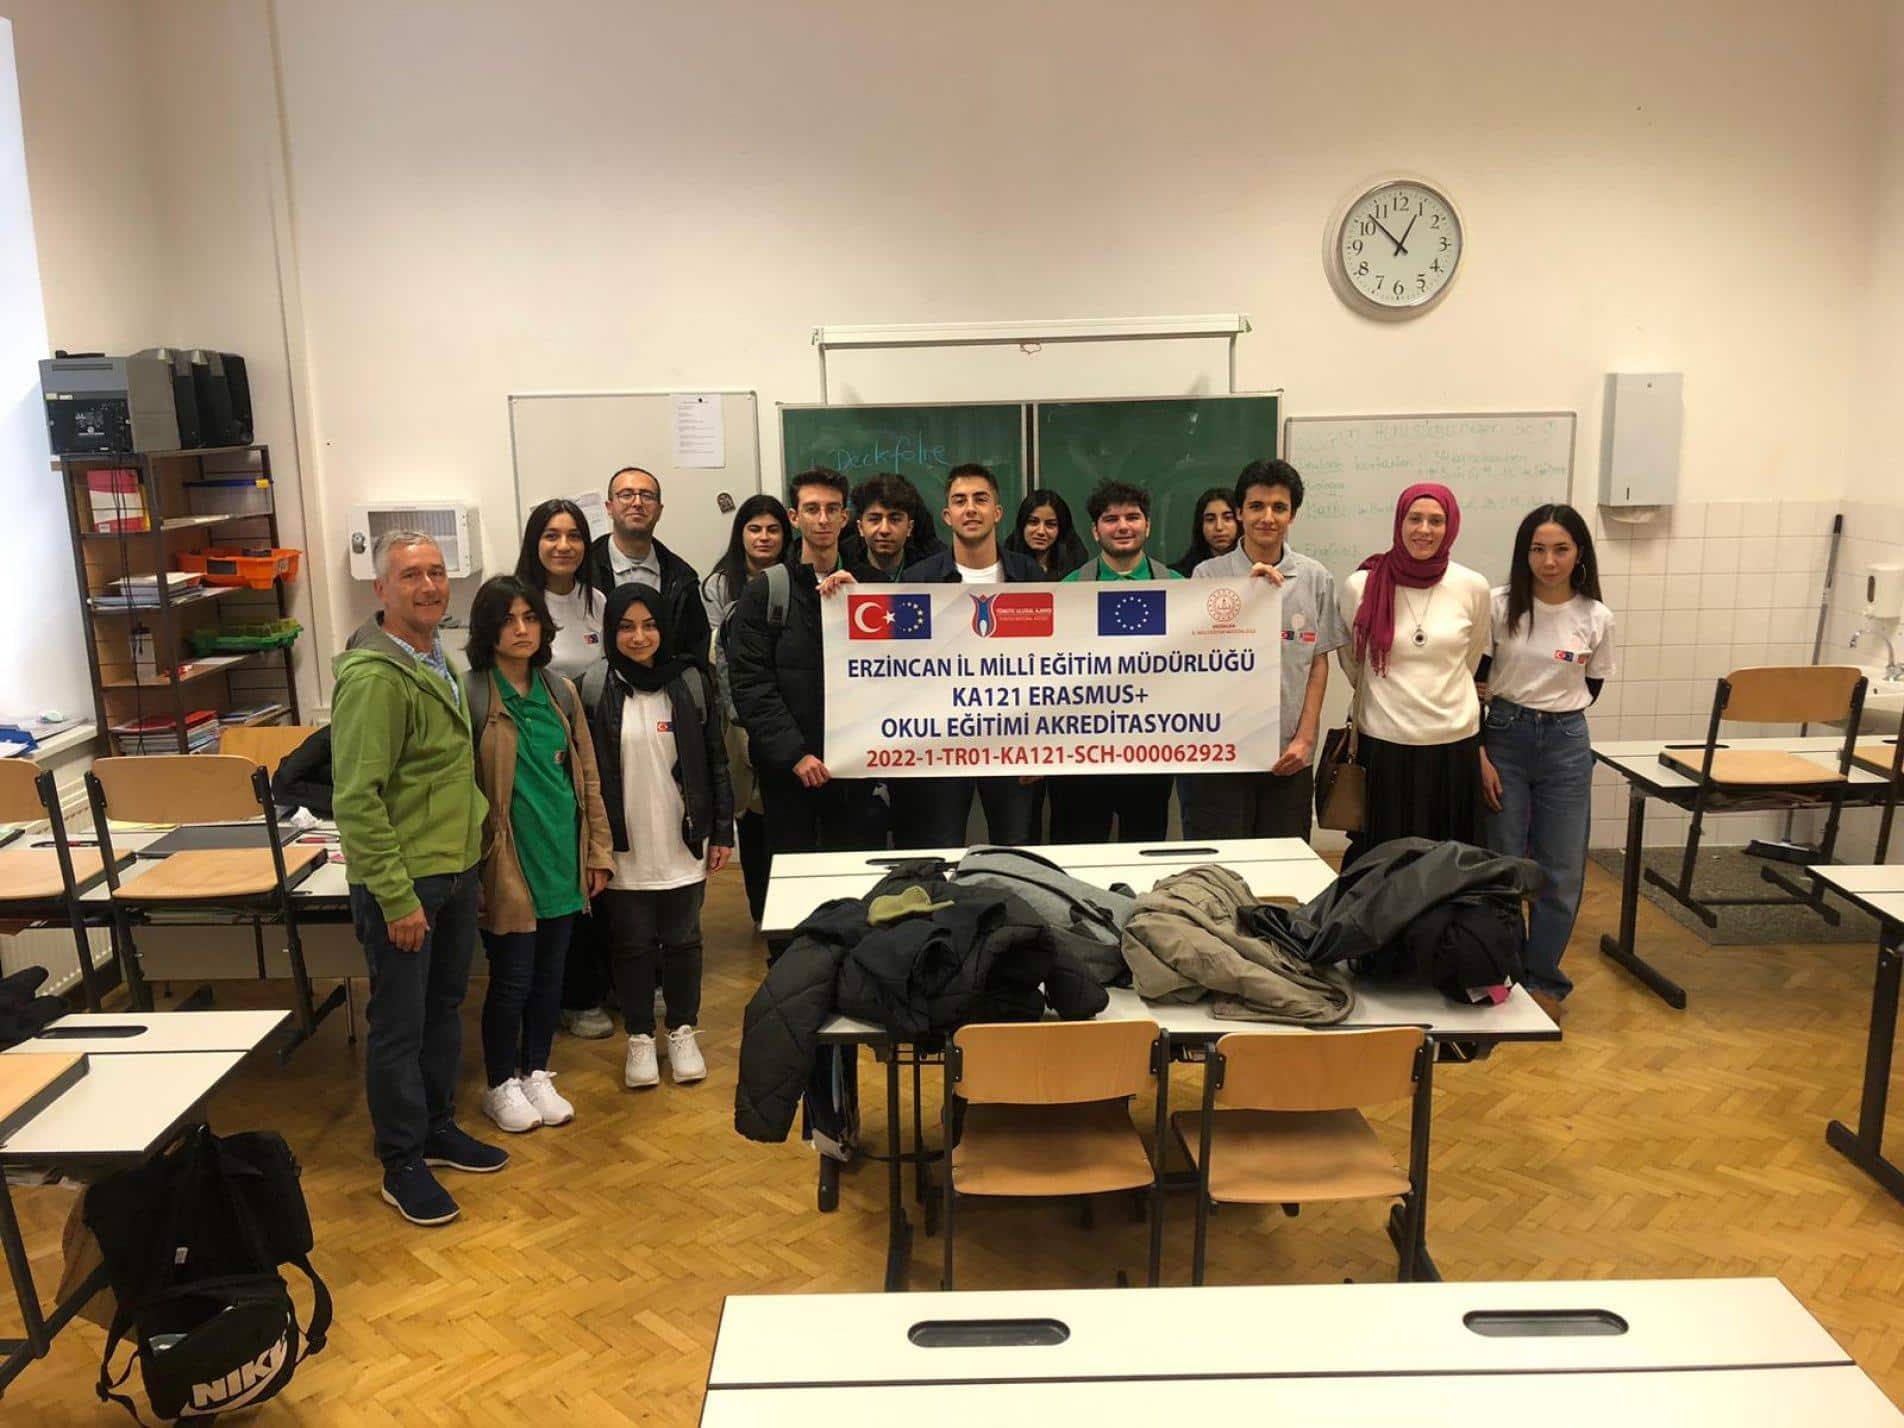 Erzincan MEM 2022 Yılı Okul Eğitimi Erasmus+ Programı Kapsamında Gerçekleştirilen Viyana 1. Grup Hareketliliği Tamamlandı